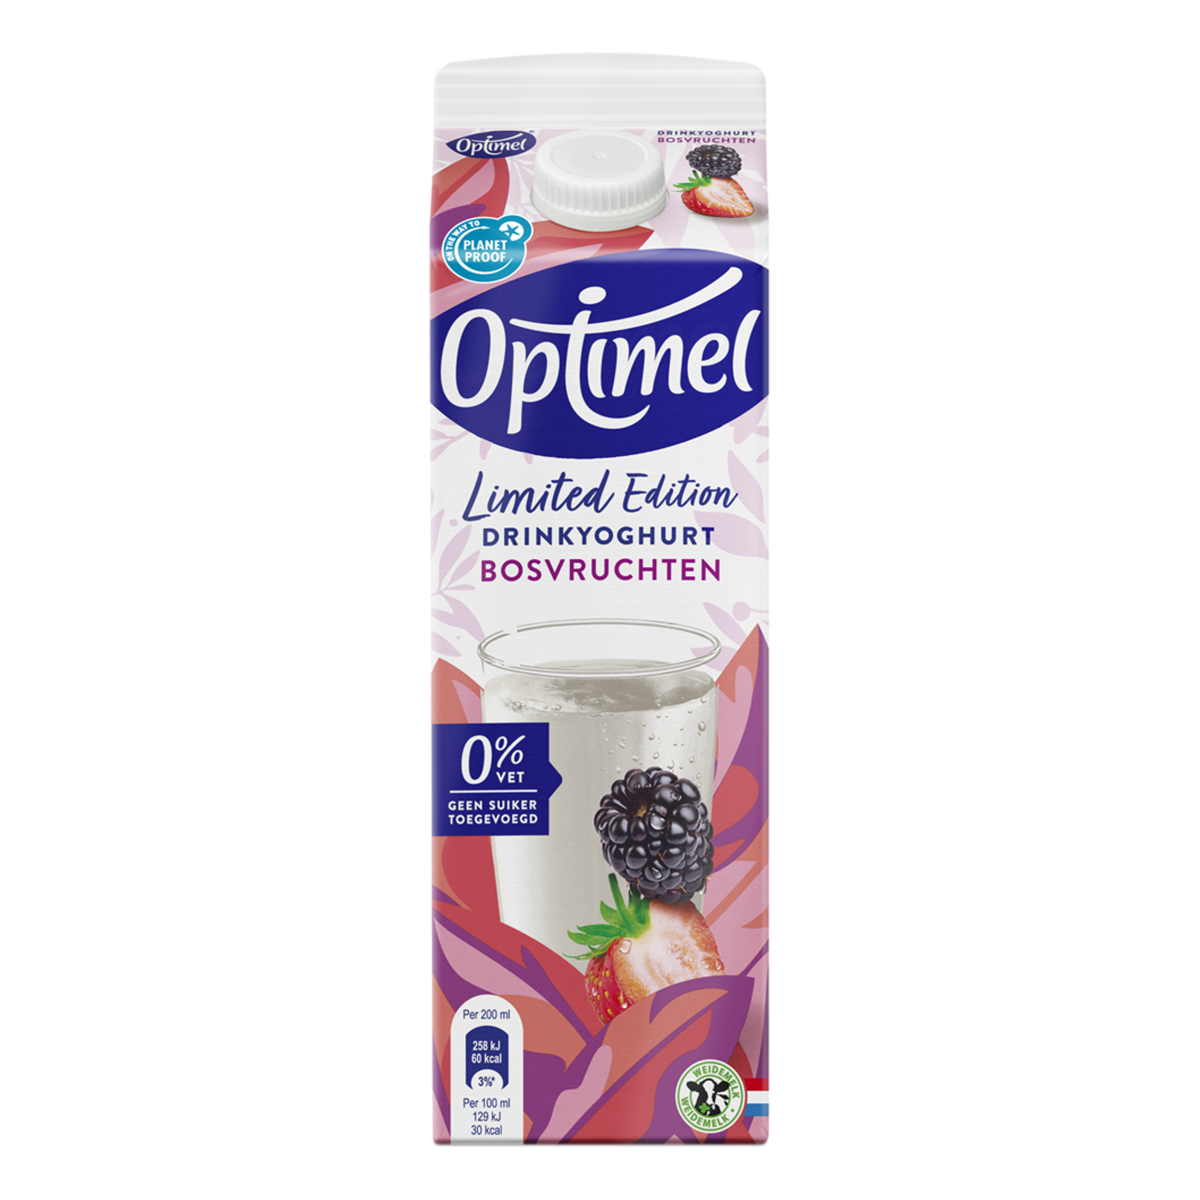 Optimel Drinkyoghurt limited edition Bosvruchten 0% vet 1L